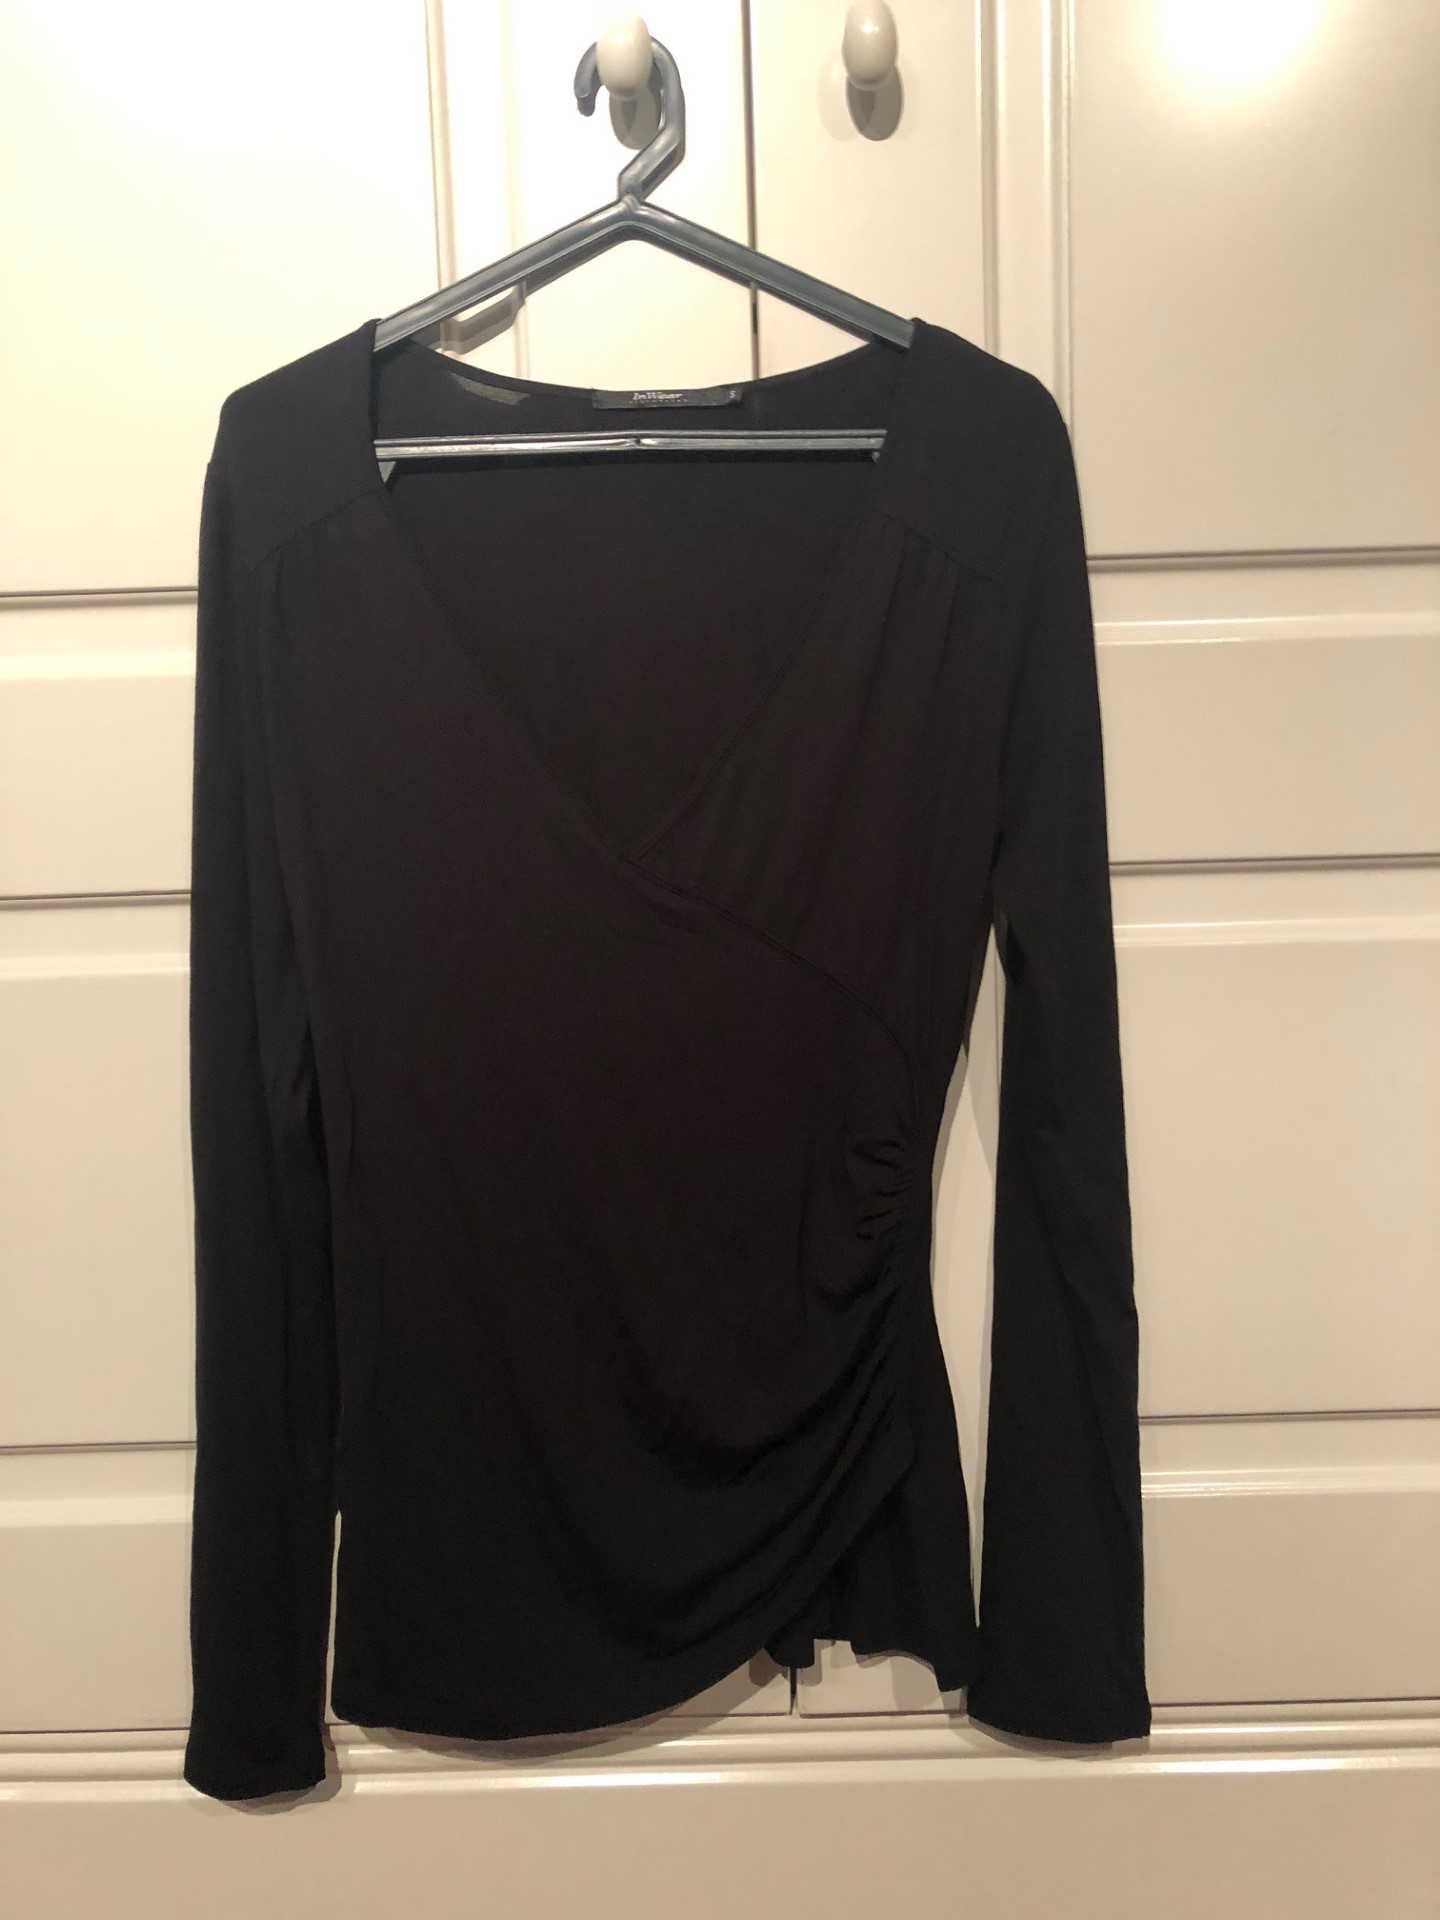 2 camisolas pretaS em malha ,algodão marca BERSKA/ INWEAR tamanho S